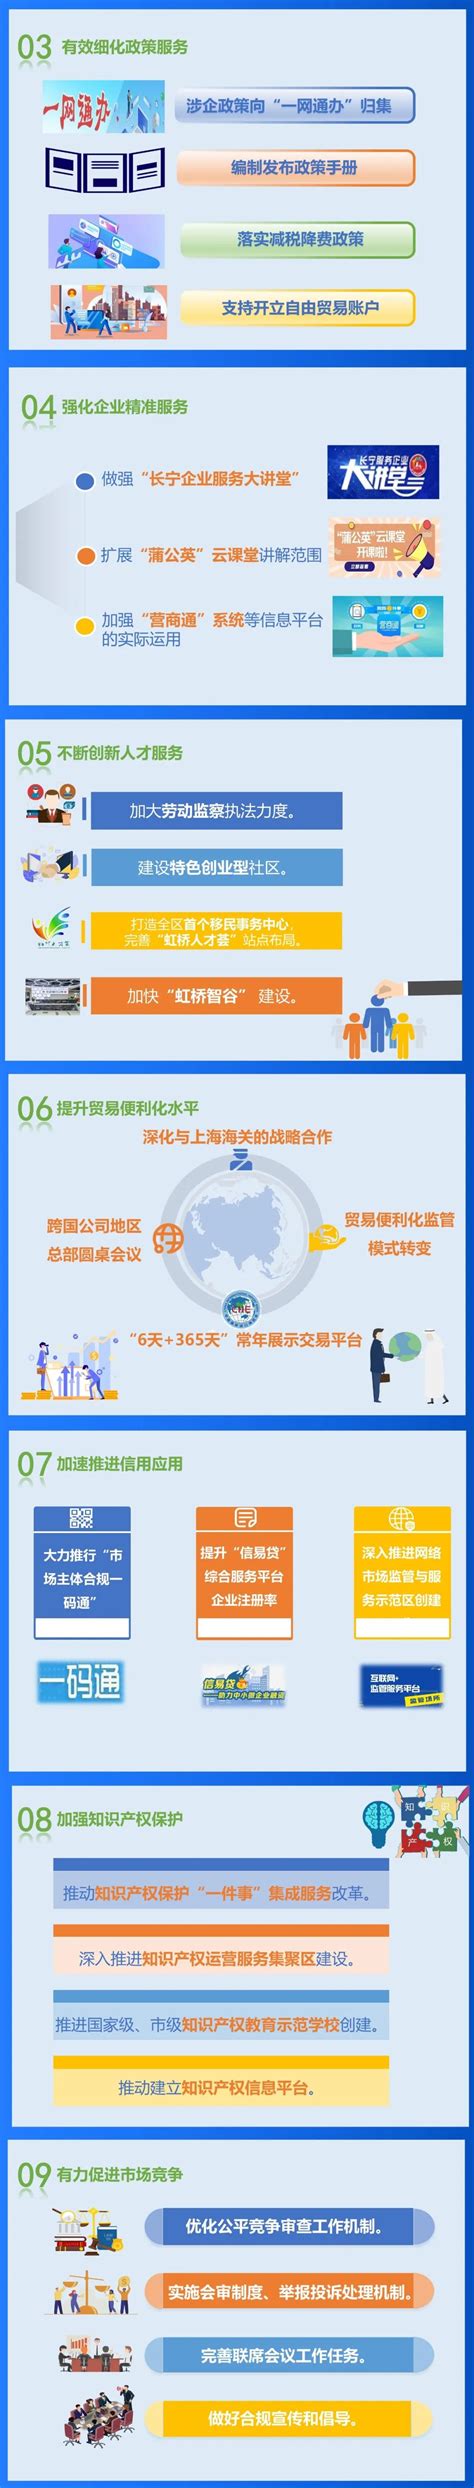 长宁区这个营商服务项目入选全市十大“区级优秀项目”__上海长宁门户网站